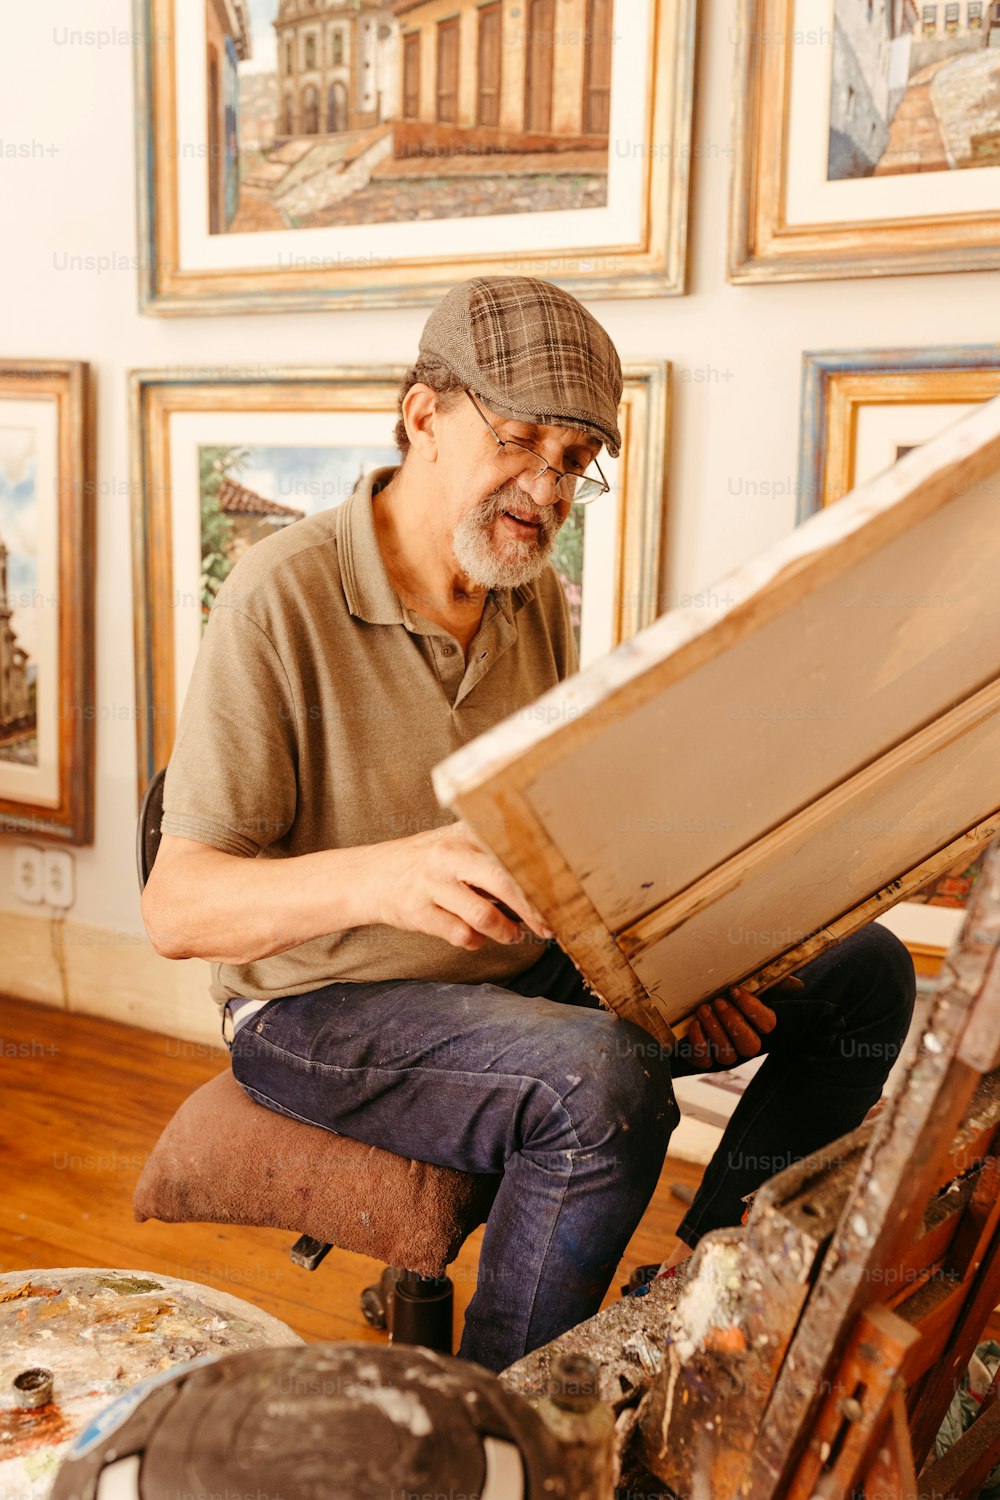 Un hombre sentado en un taburete trabajando en una obra de arte